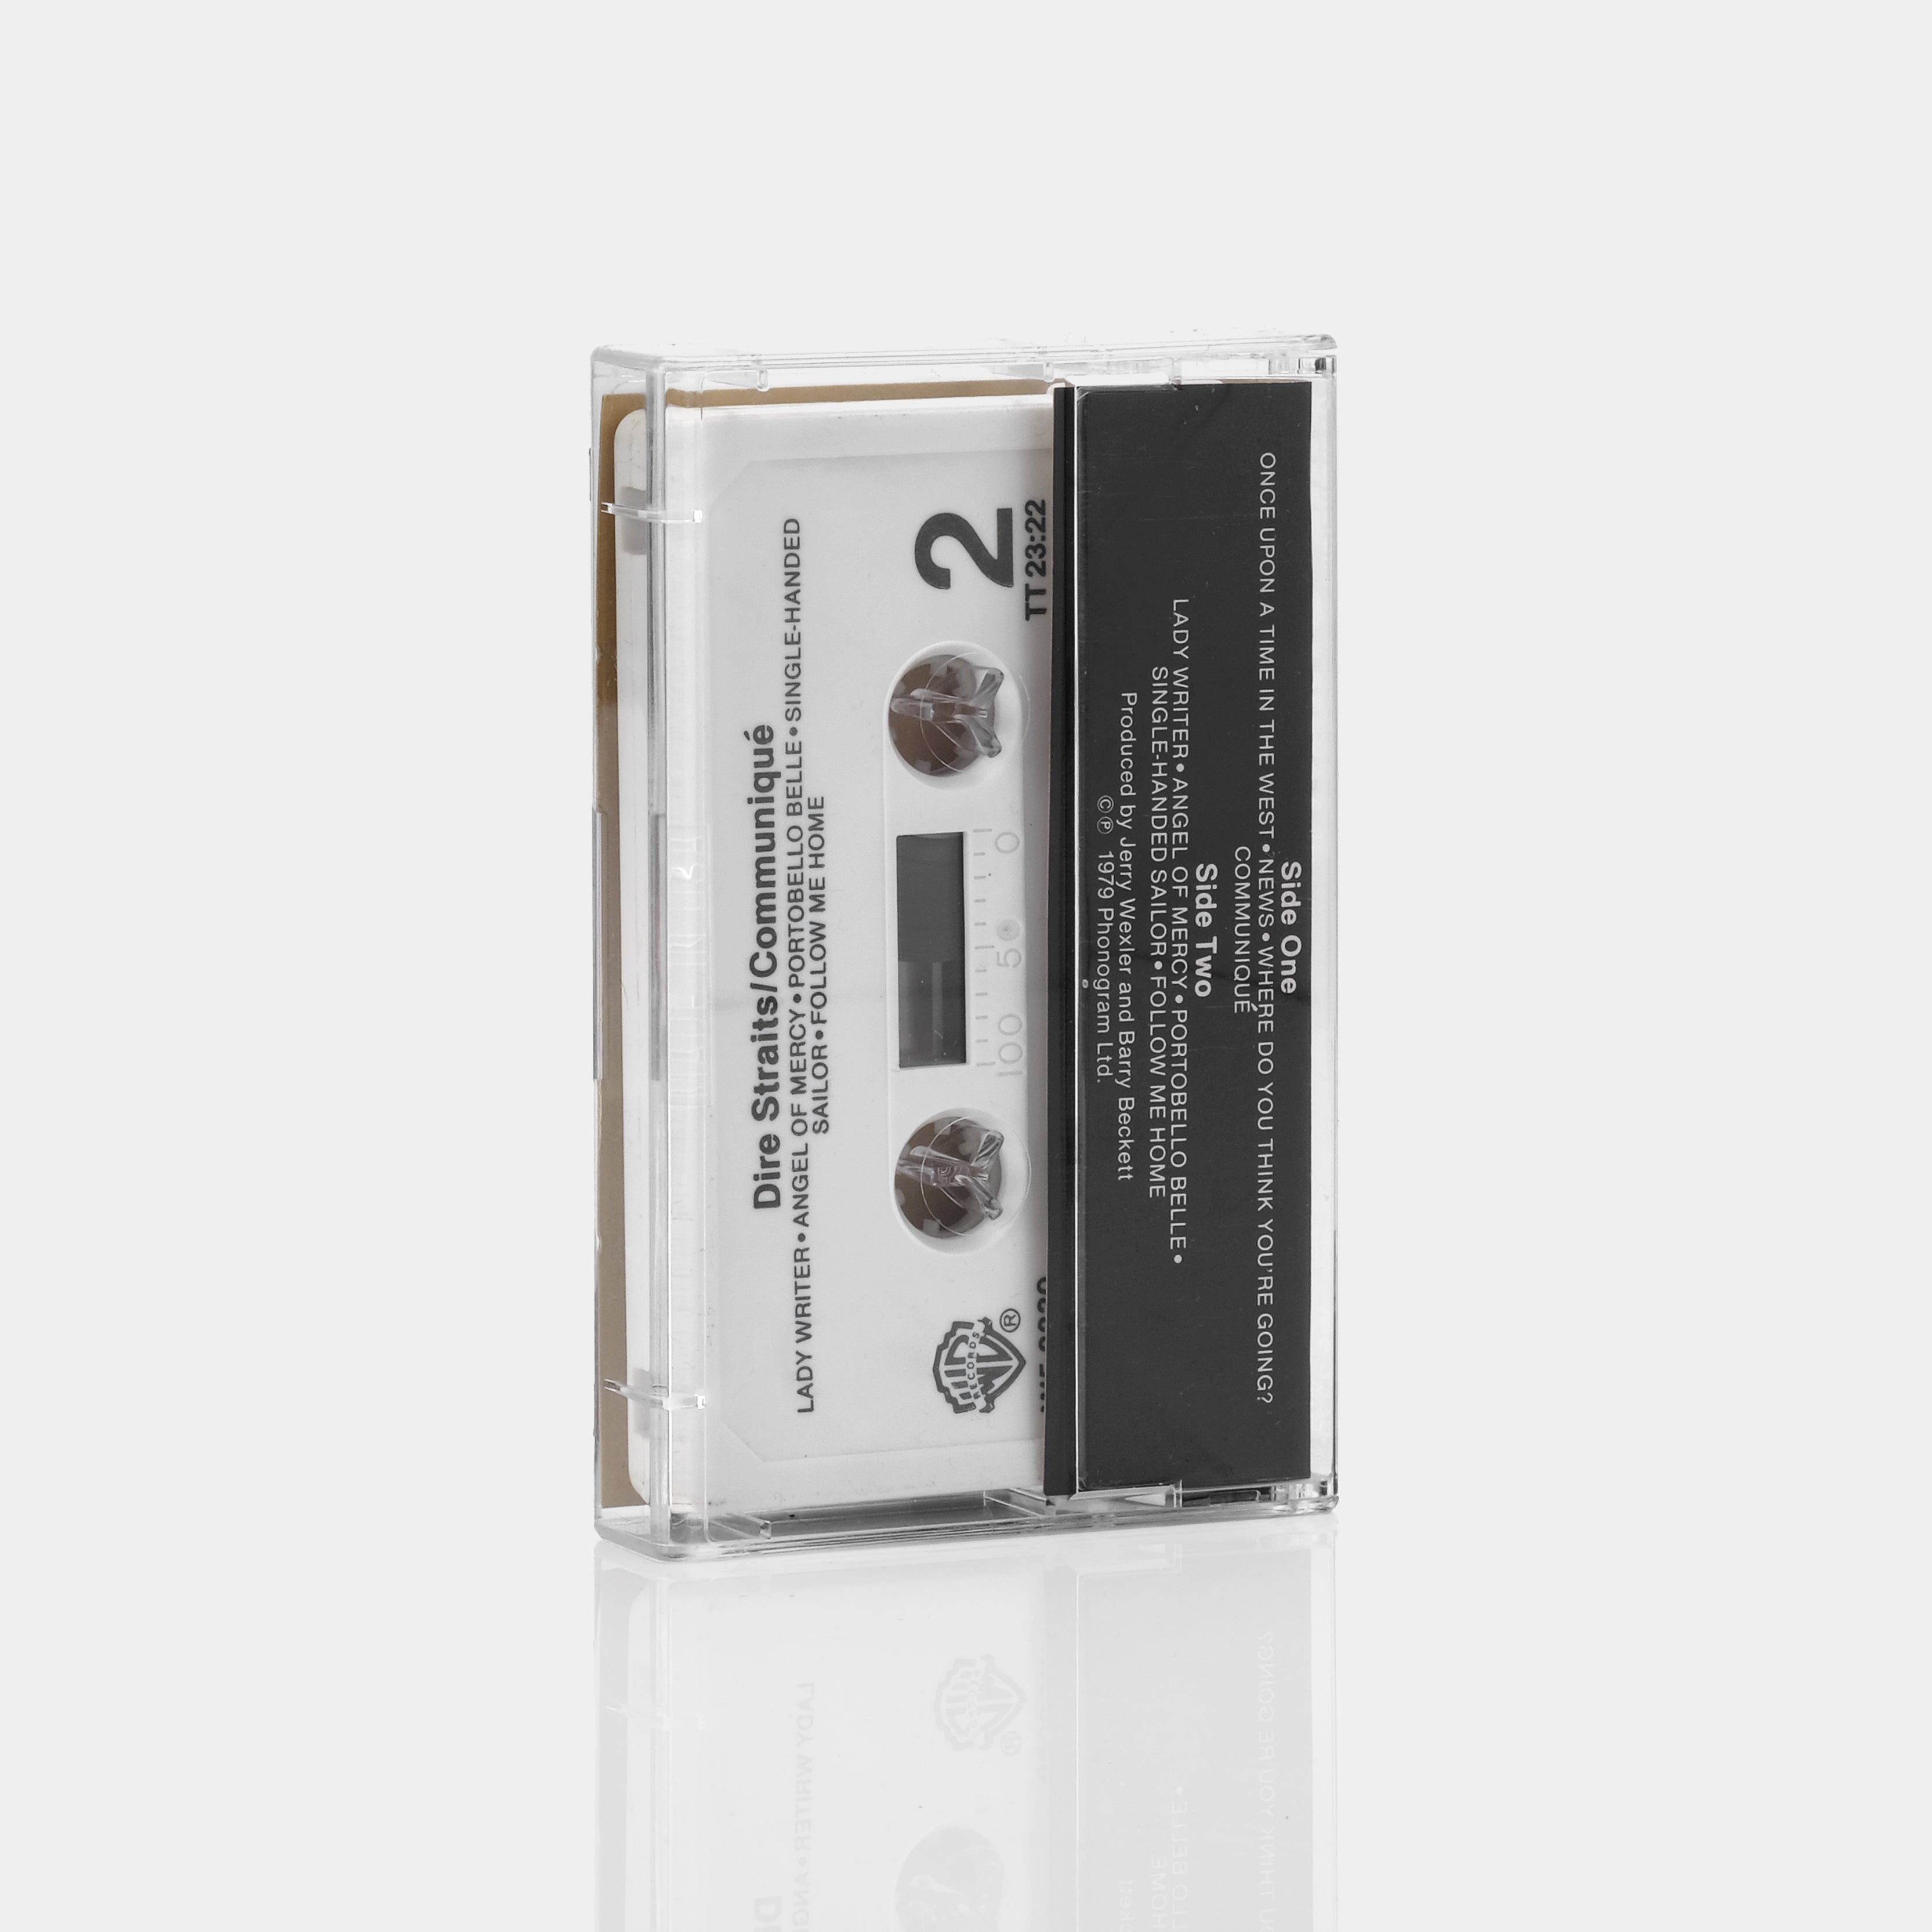 Dire Straits - Communiqué Cassette Tape